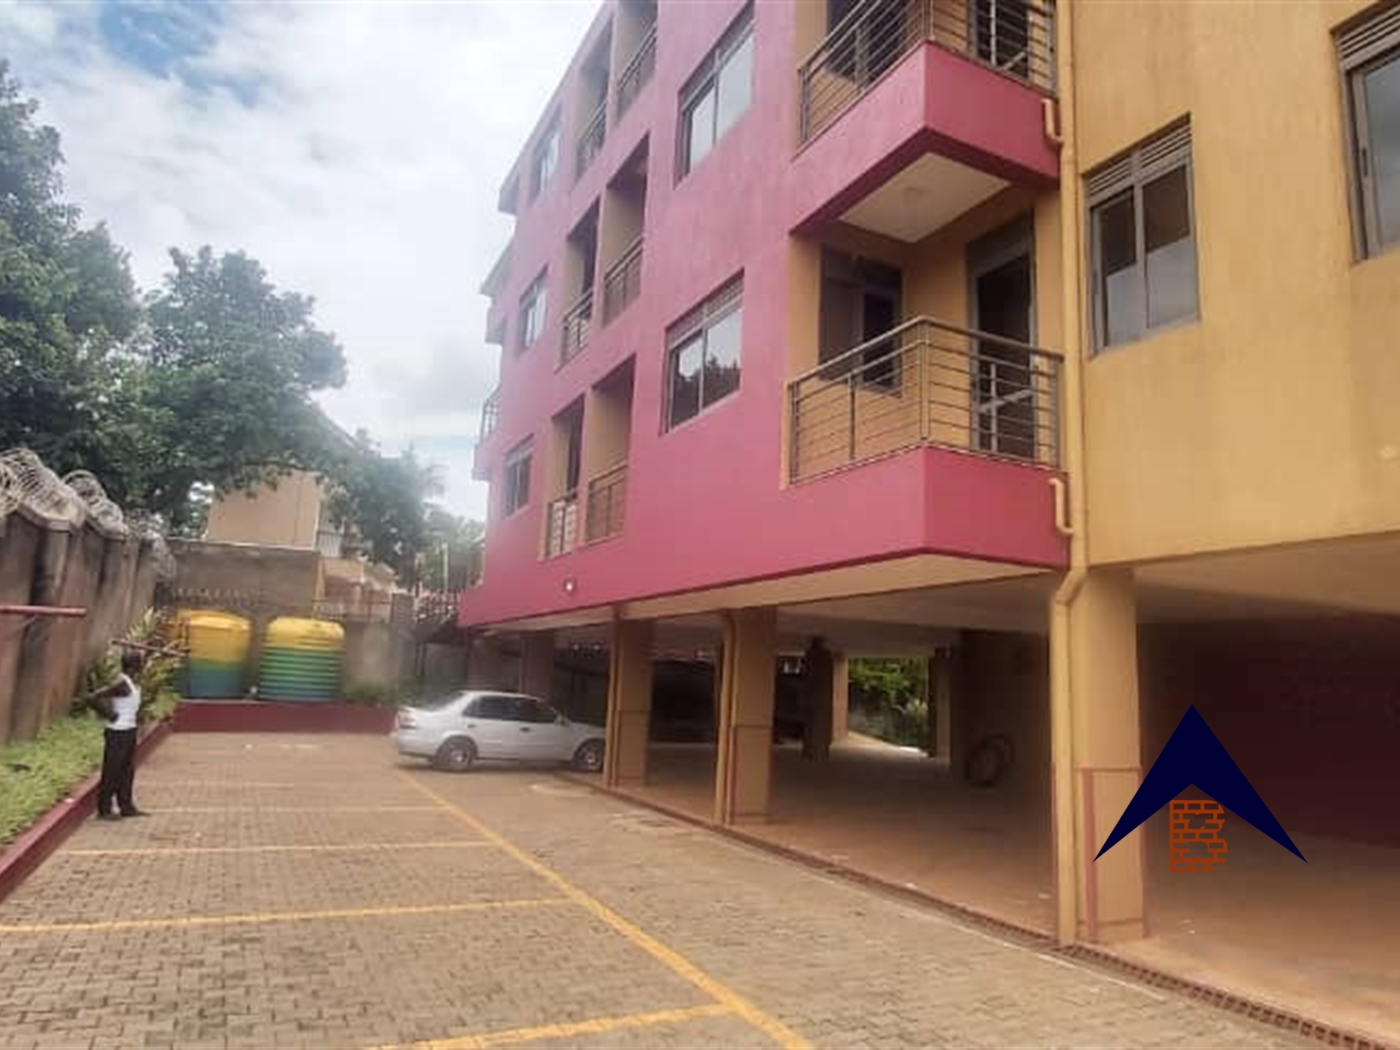 Apartment block for rent in Naguru Kampala